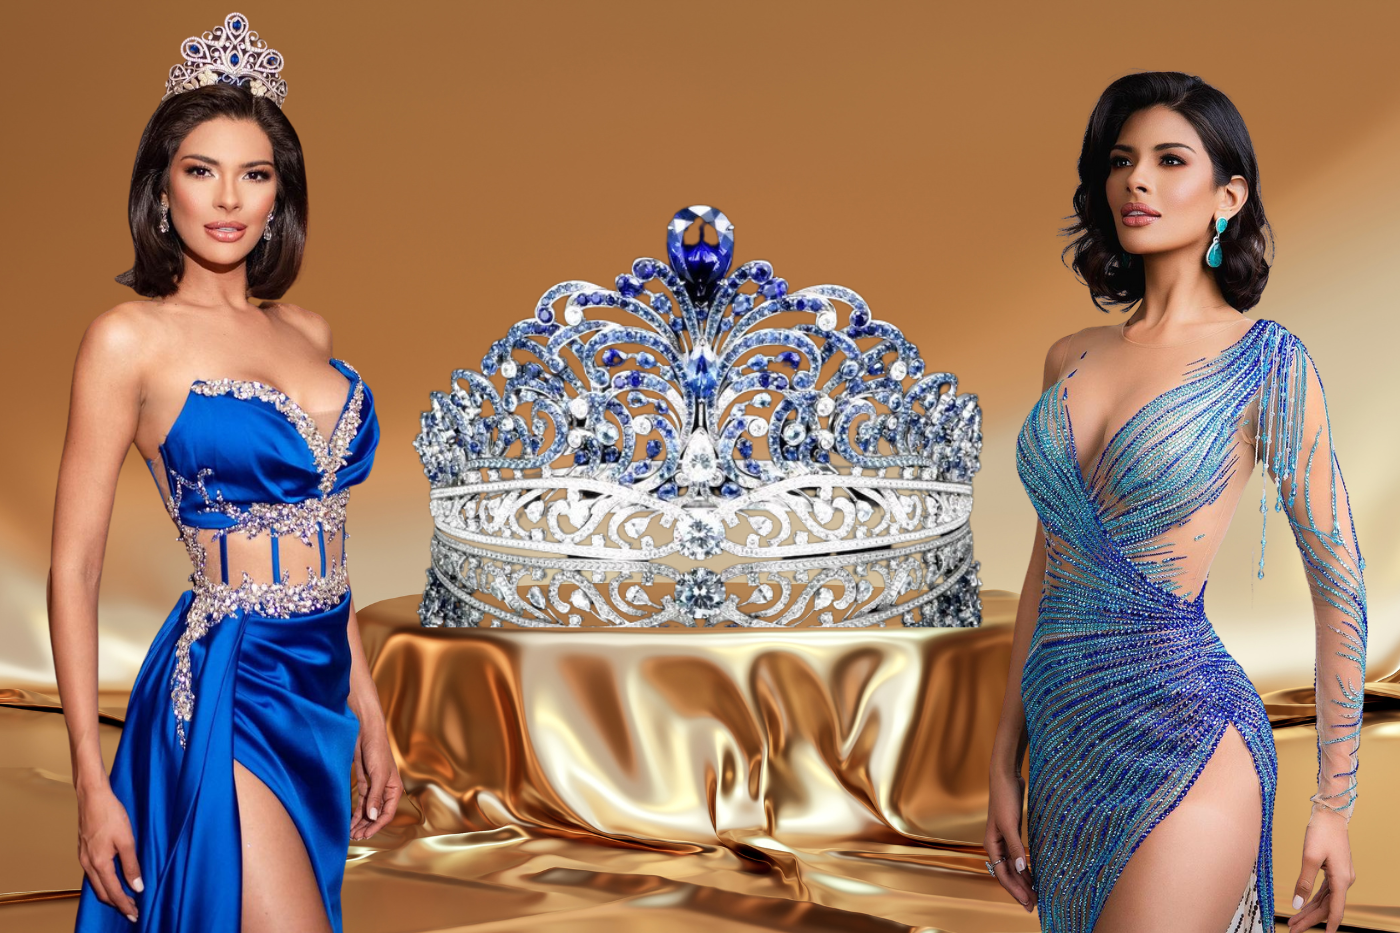 10 datos que debes conocer de Sheynnis Palacios, Miss Universo 2023